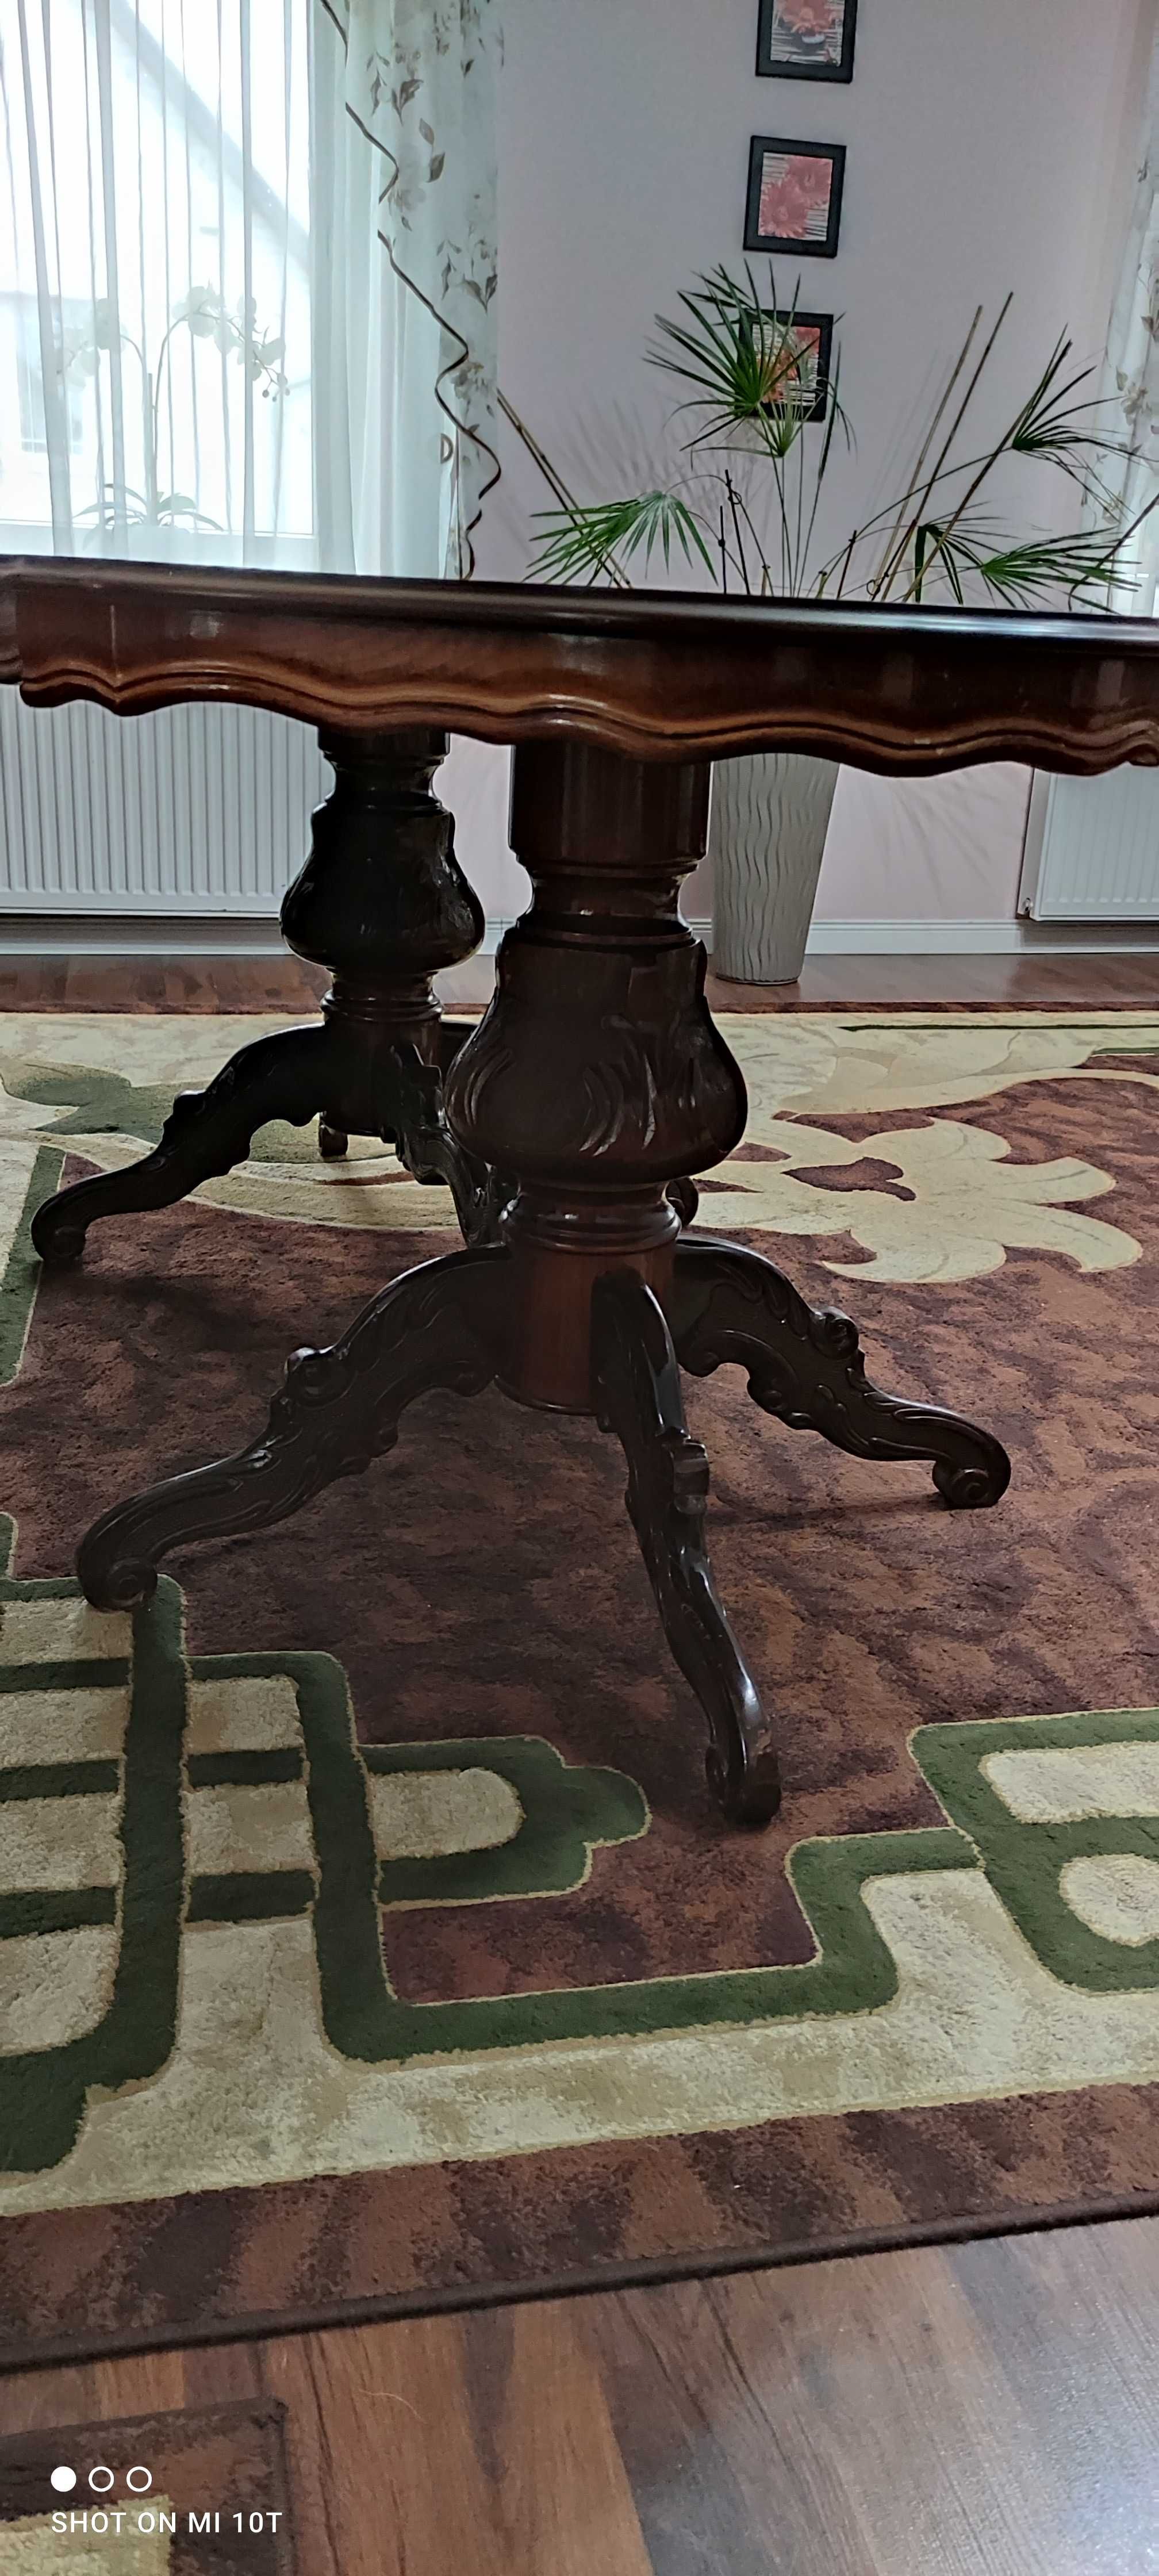 Stół Ludwik Filip, duży stylowy stół włoski